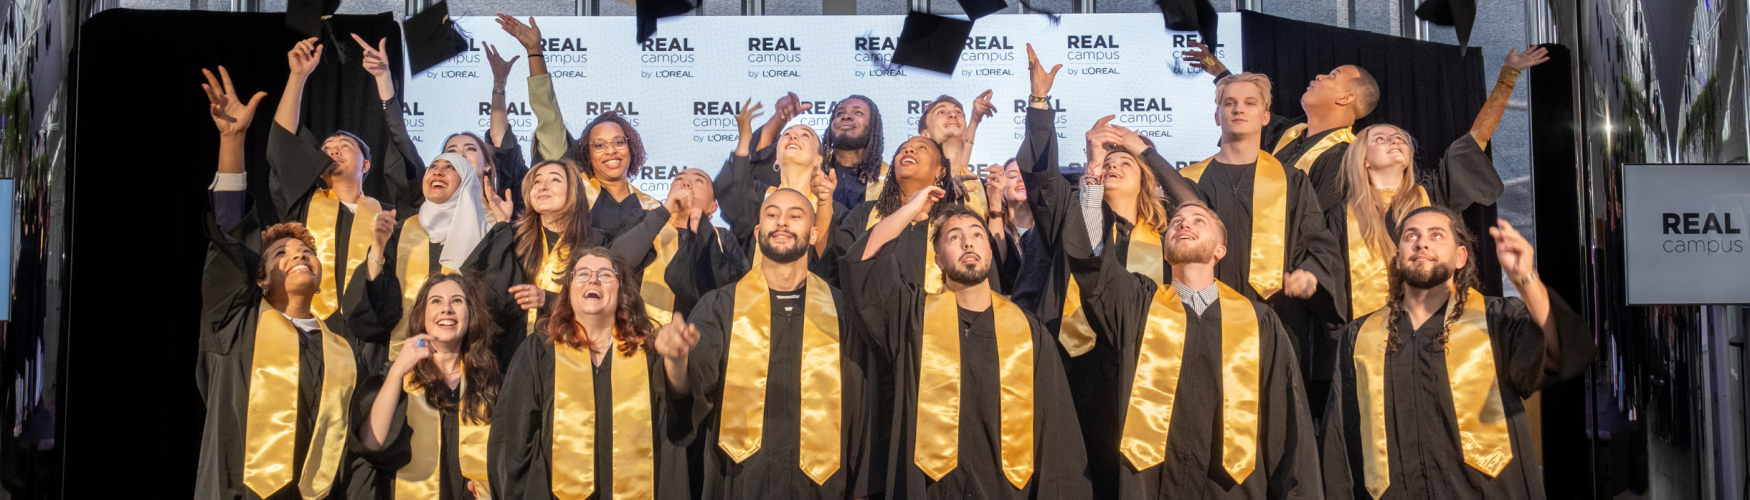 Remise de diplômes REAL Campus 